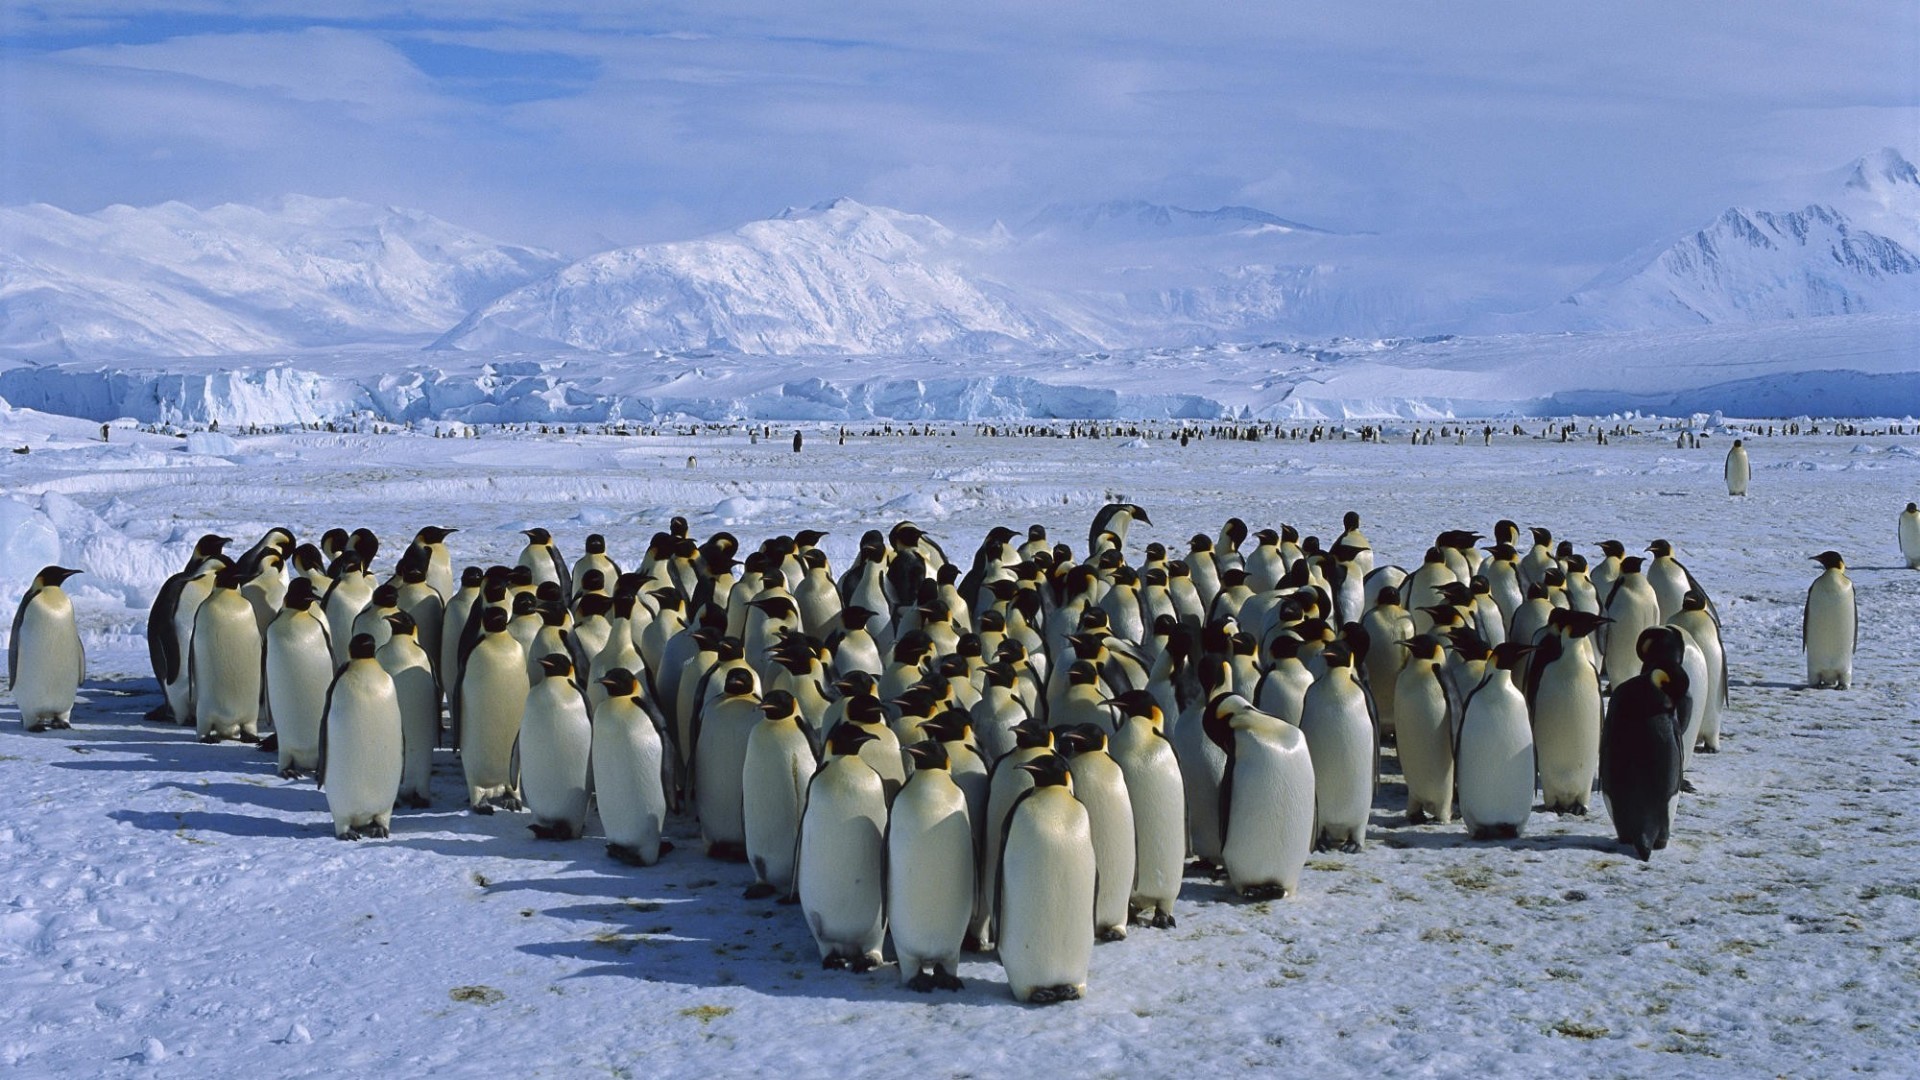 Пингвины в Антарктиде. Колония пингвинов в Антарктиде. Арктика Антарктика Антарктида. Первый мореплаватели увидевшие пингвинов в антарктиде